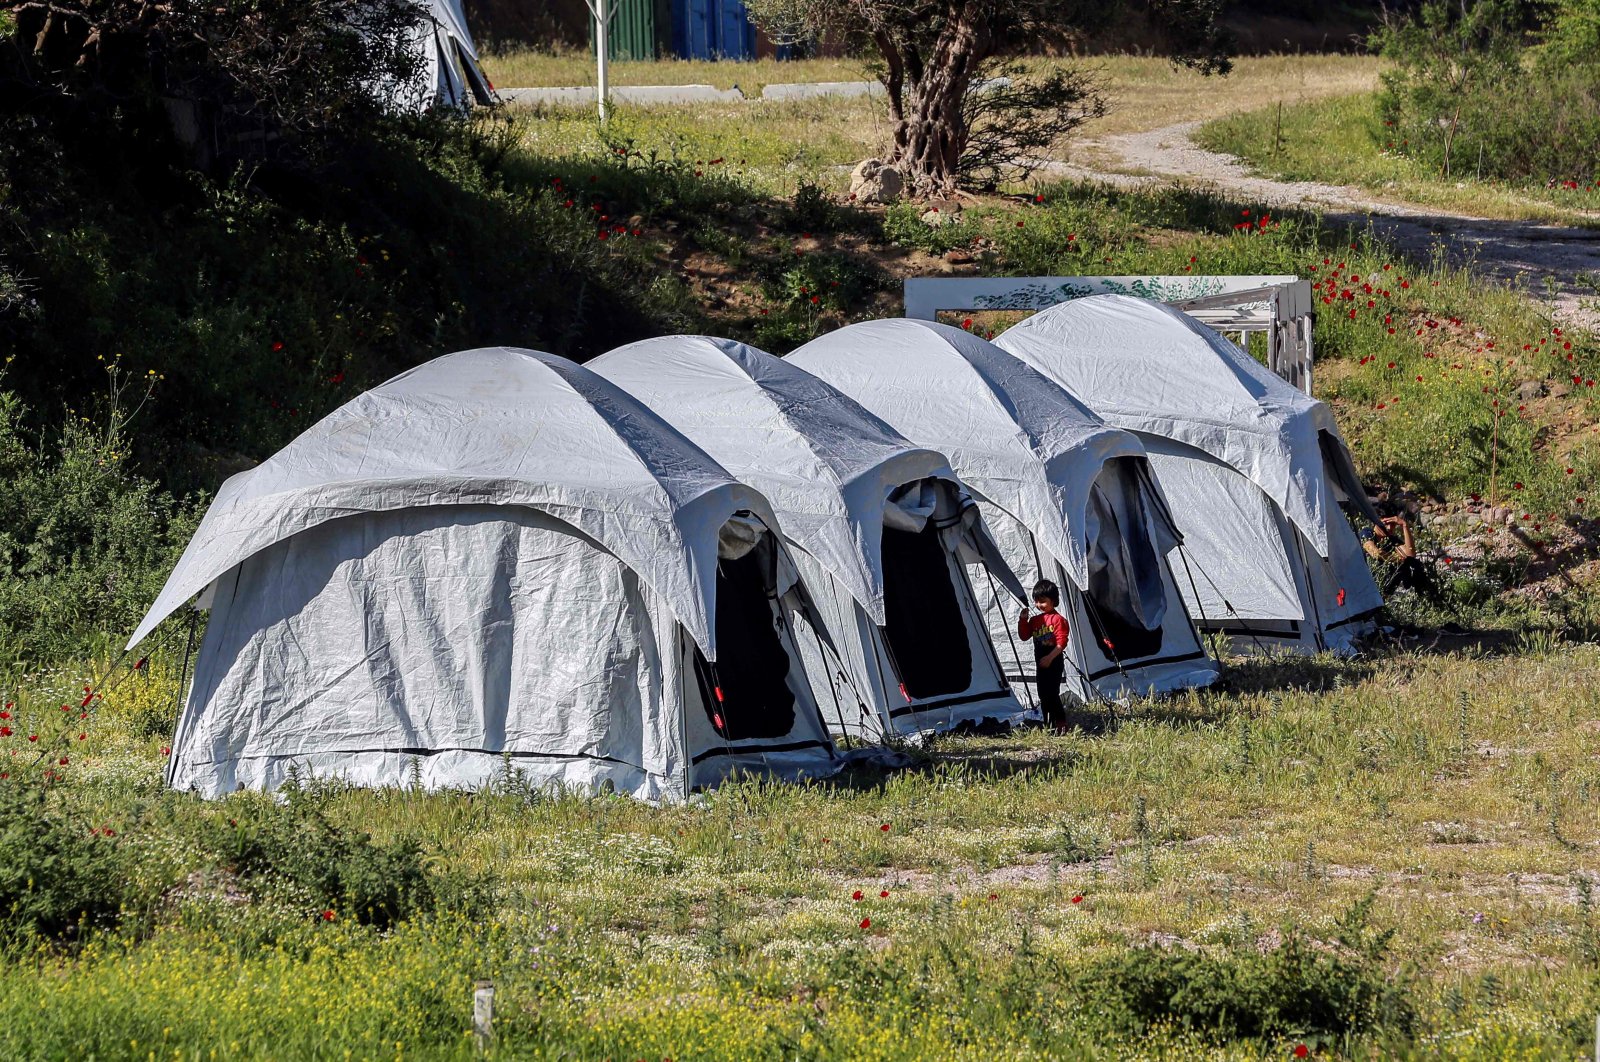 Camping with extend. Палатки для беженцев. Палатки для беженцев в Германии. Палаточный городок в Страсбурге. Самый большой палаточный городок в мире Африка.